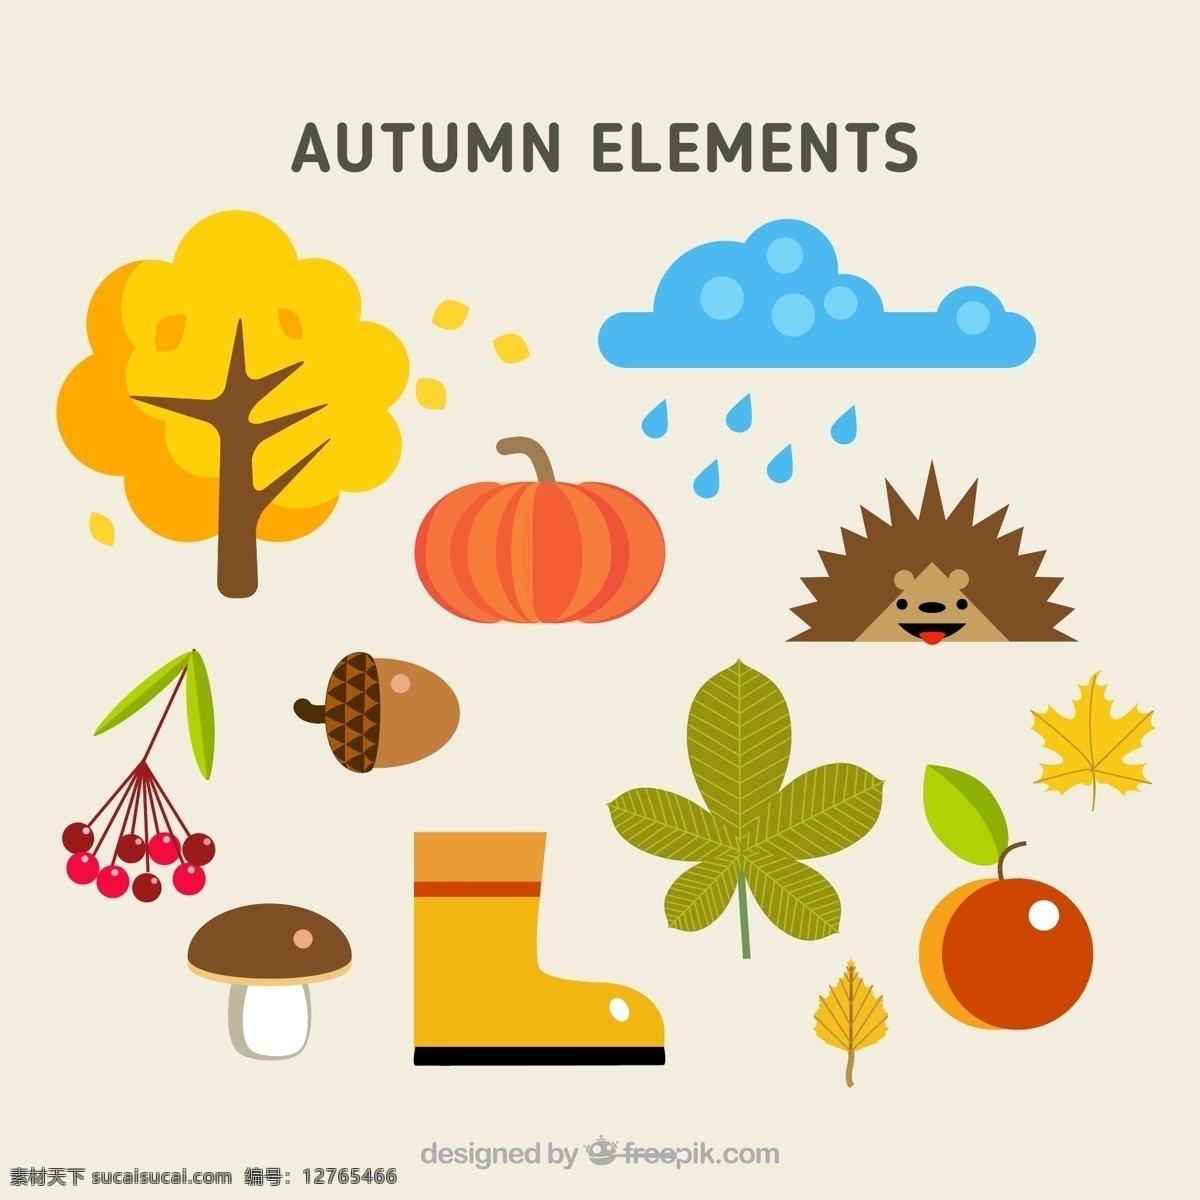 自然 秋天 元素 秋天的元素 秋天素材 秋天南瓜 蘑菇 树木 树叶 矢量素材 白色